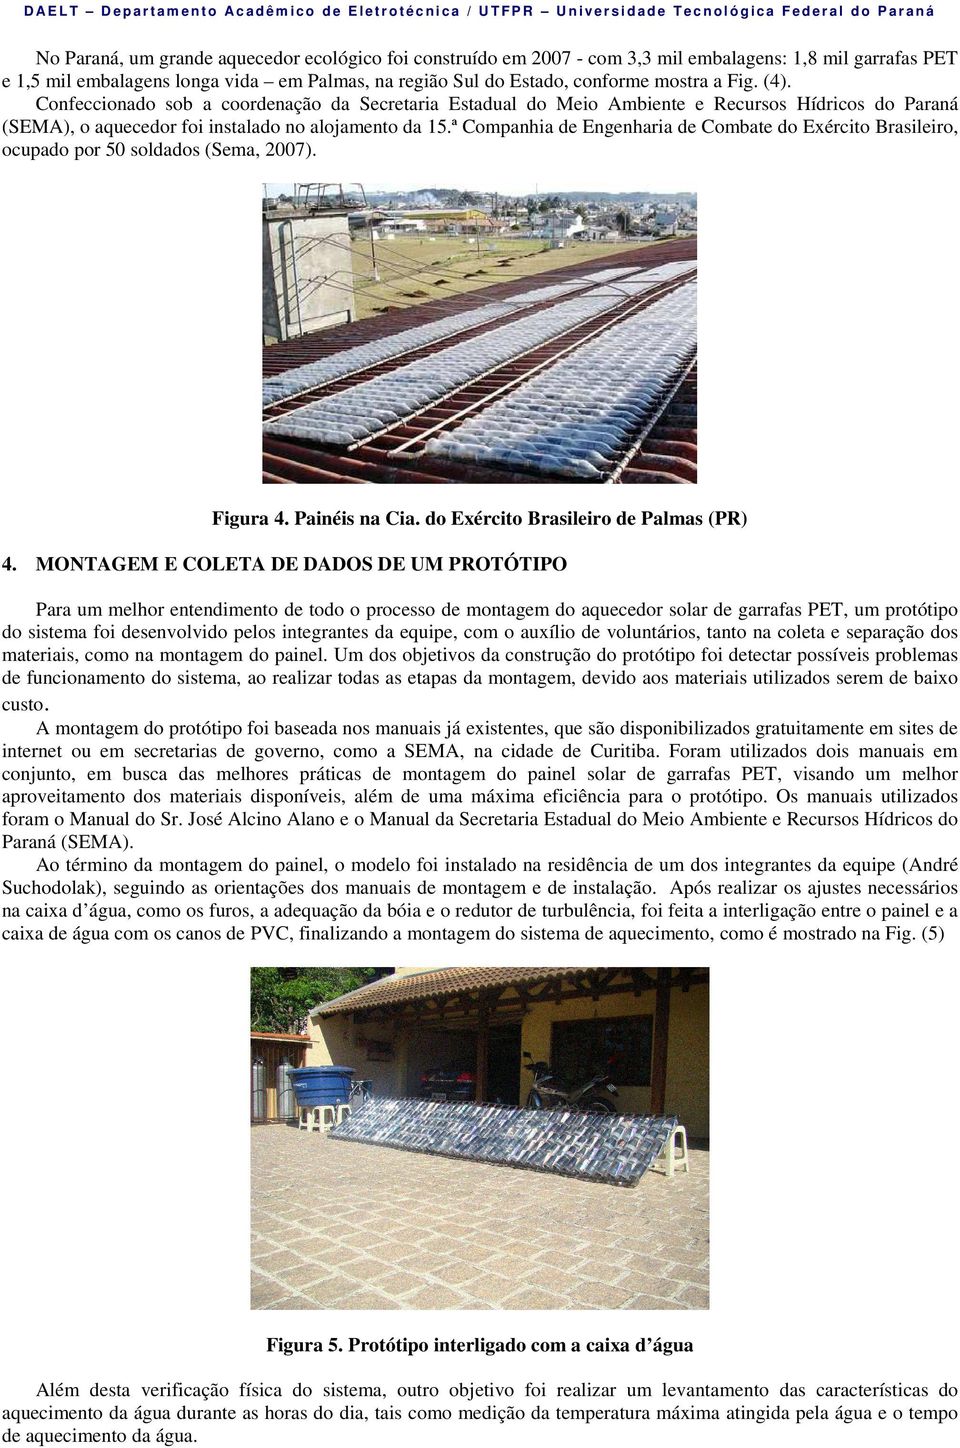 Confeccionado sob a coordenação da Secretaria Estadual do Meio Ambiente e Recursos Hídricos do Paraná (SEMA), o aquecedor foi instalado no alojamento da 15.